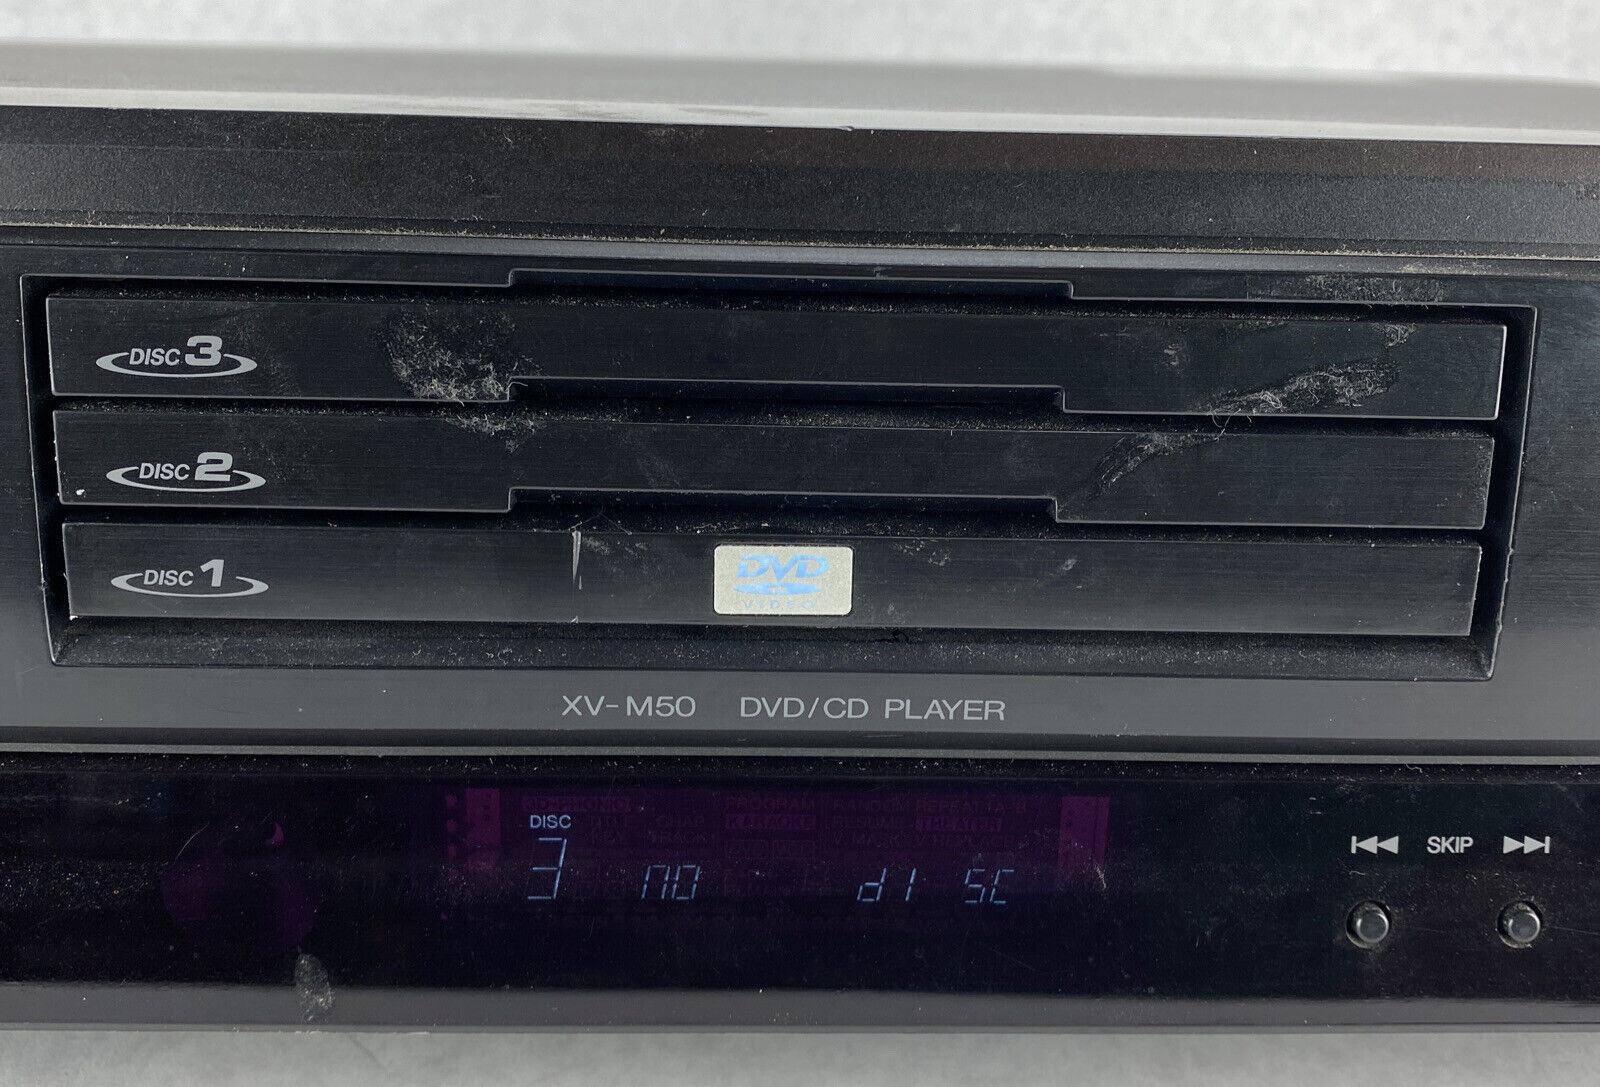 JVC XV-M50BK 3-Disc DVD Player DVD/CD/VCD Player w/Digital Out NO REMOTE